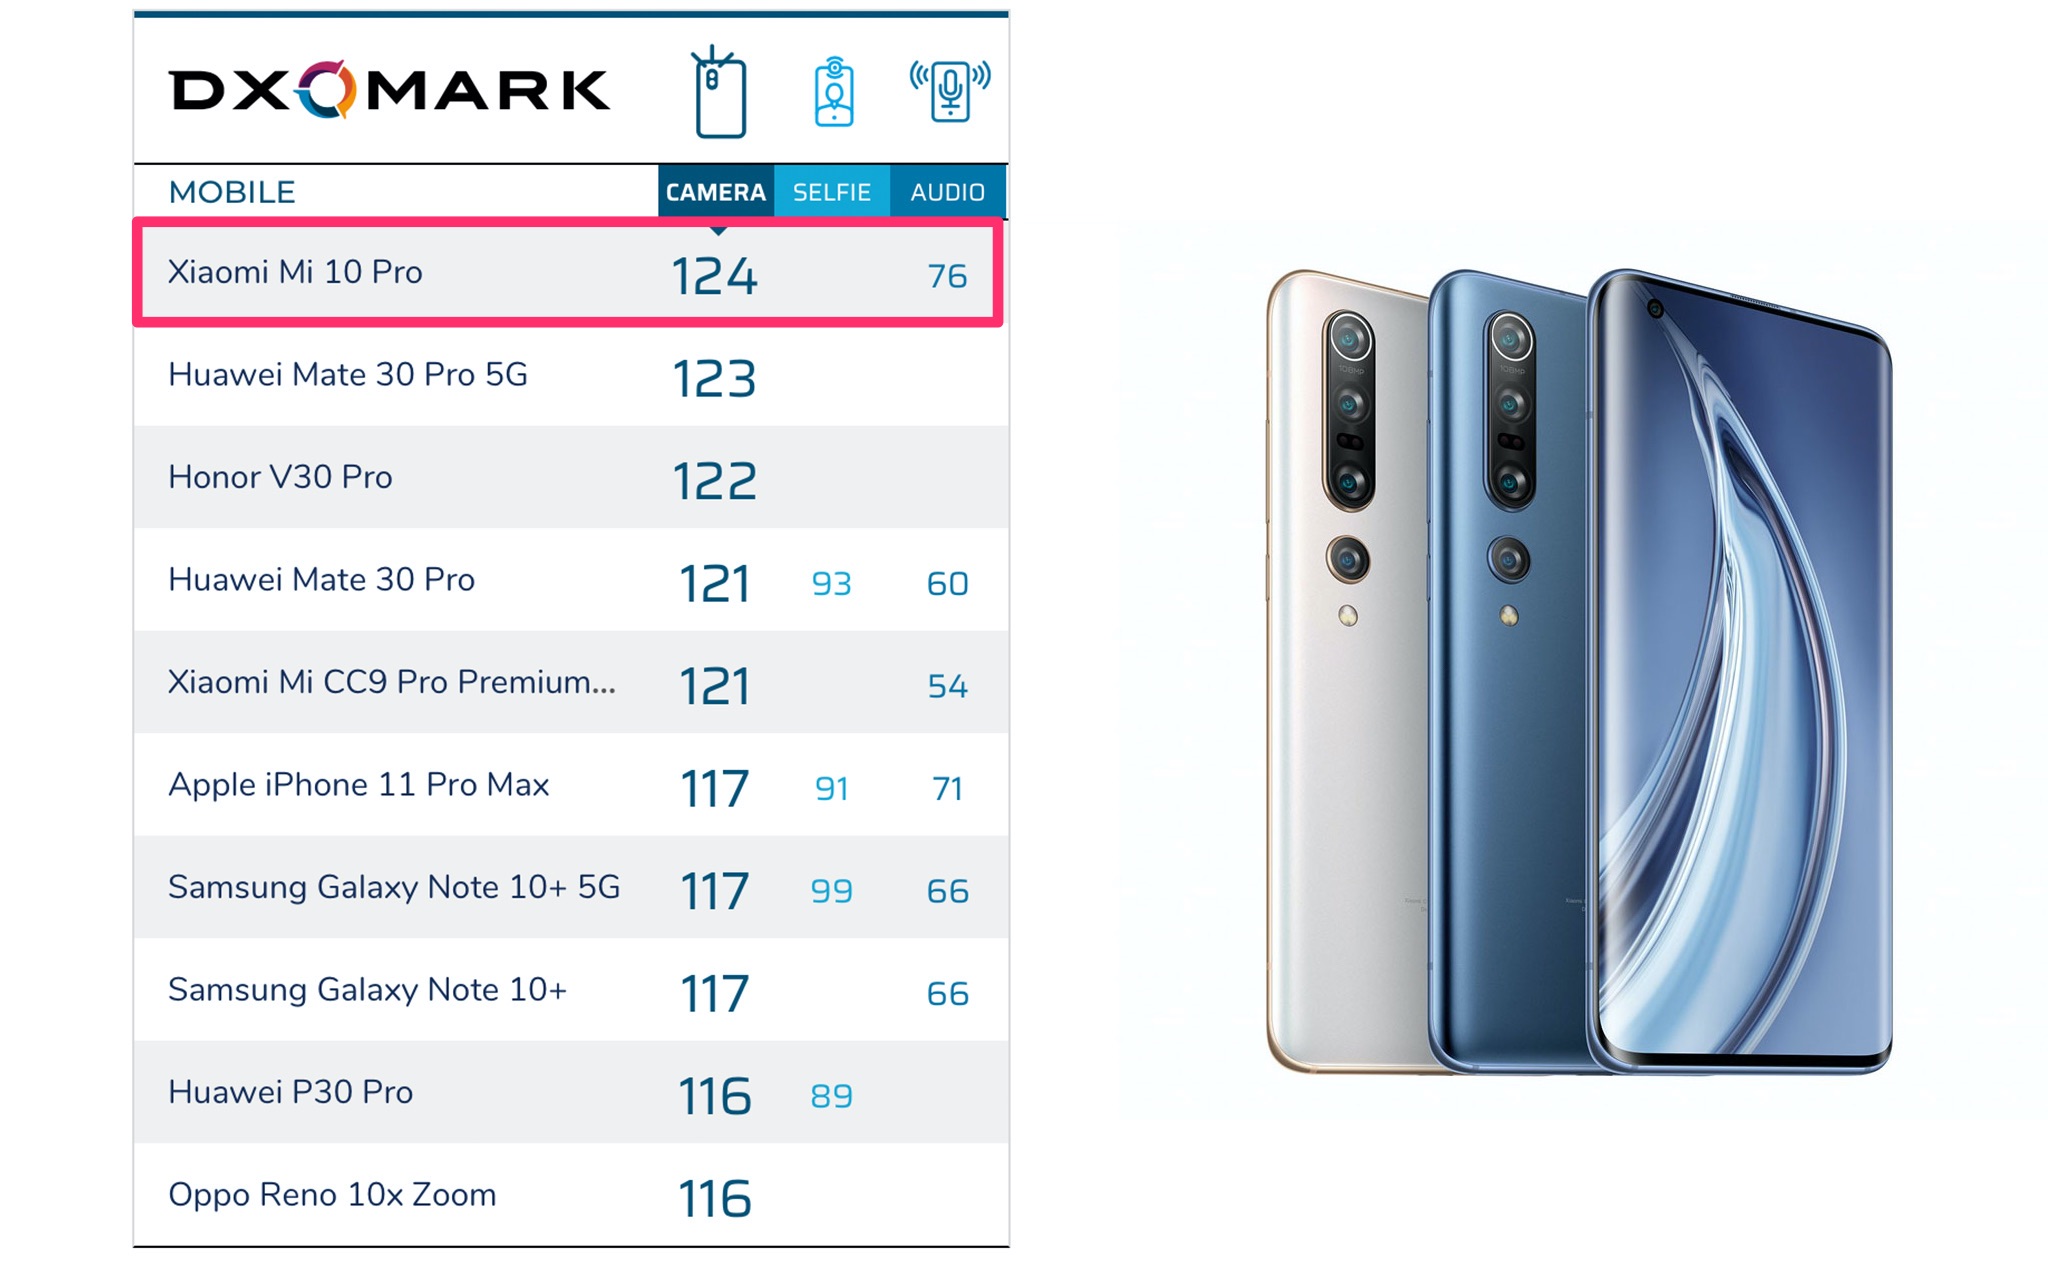 DXOMark chấm Xiaomi Mi 10 Pro đạt 124 điểm, top 1 camera ở hiện tại